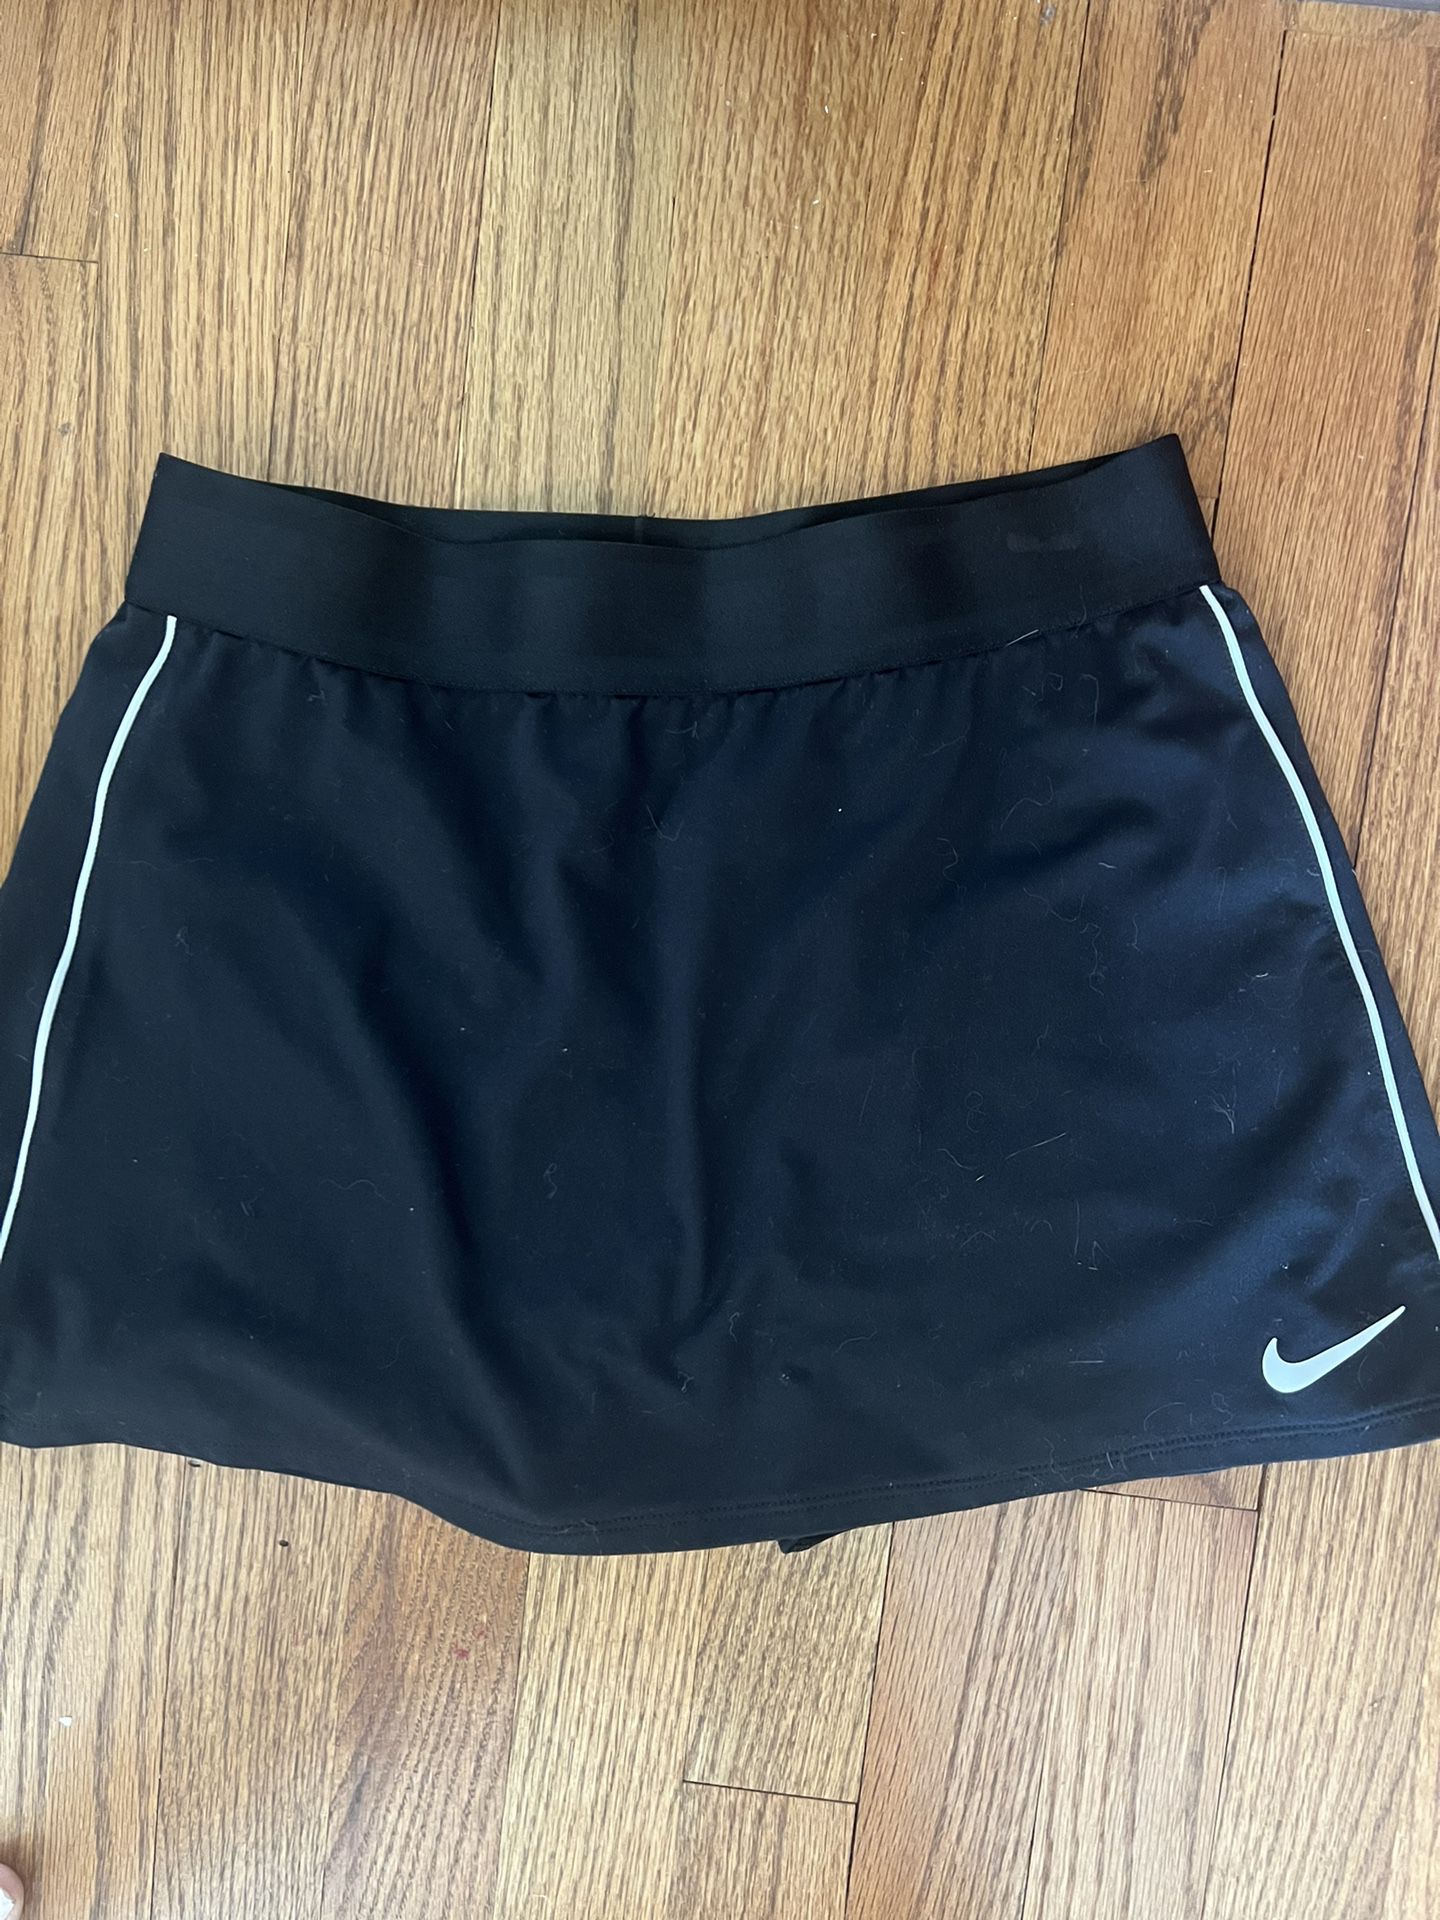 Nike Dri-fit tennis mini skirt 